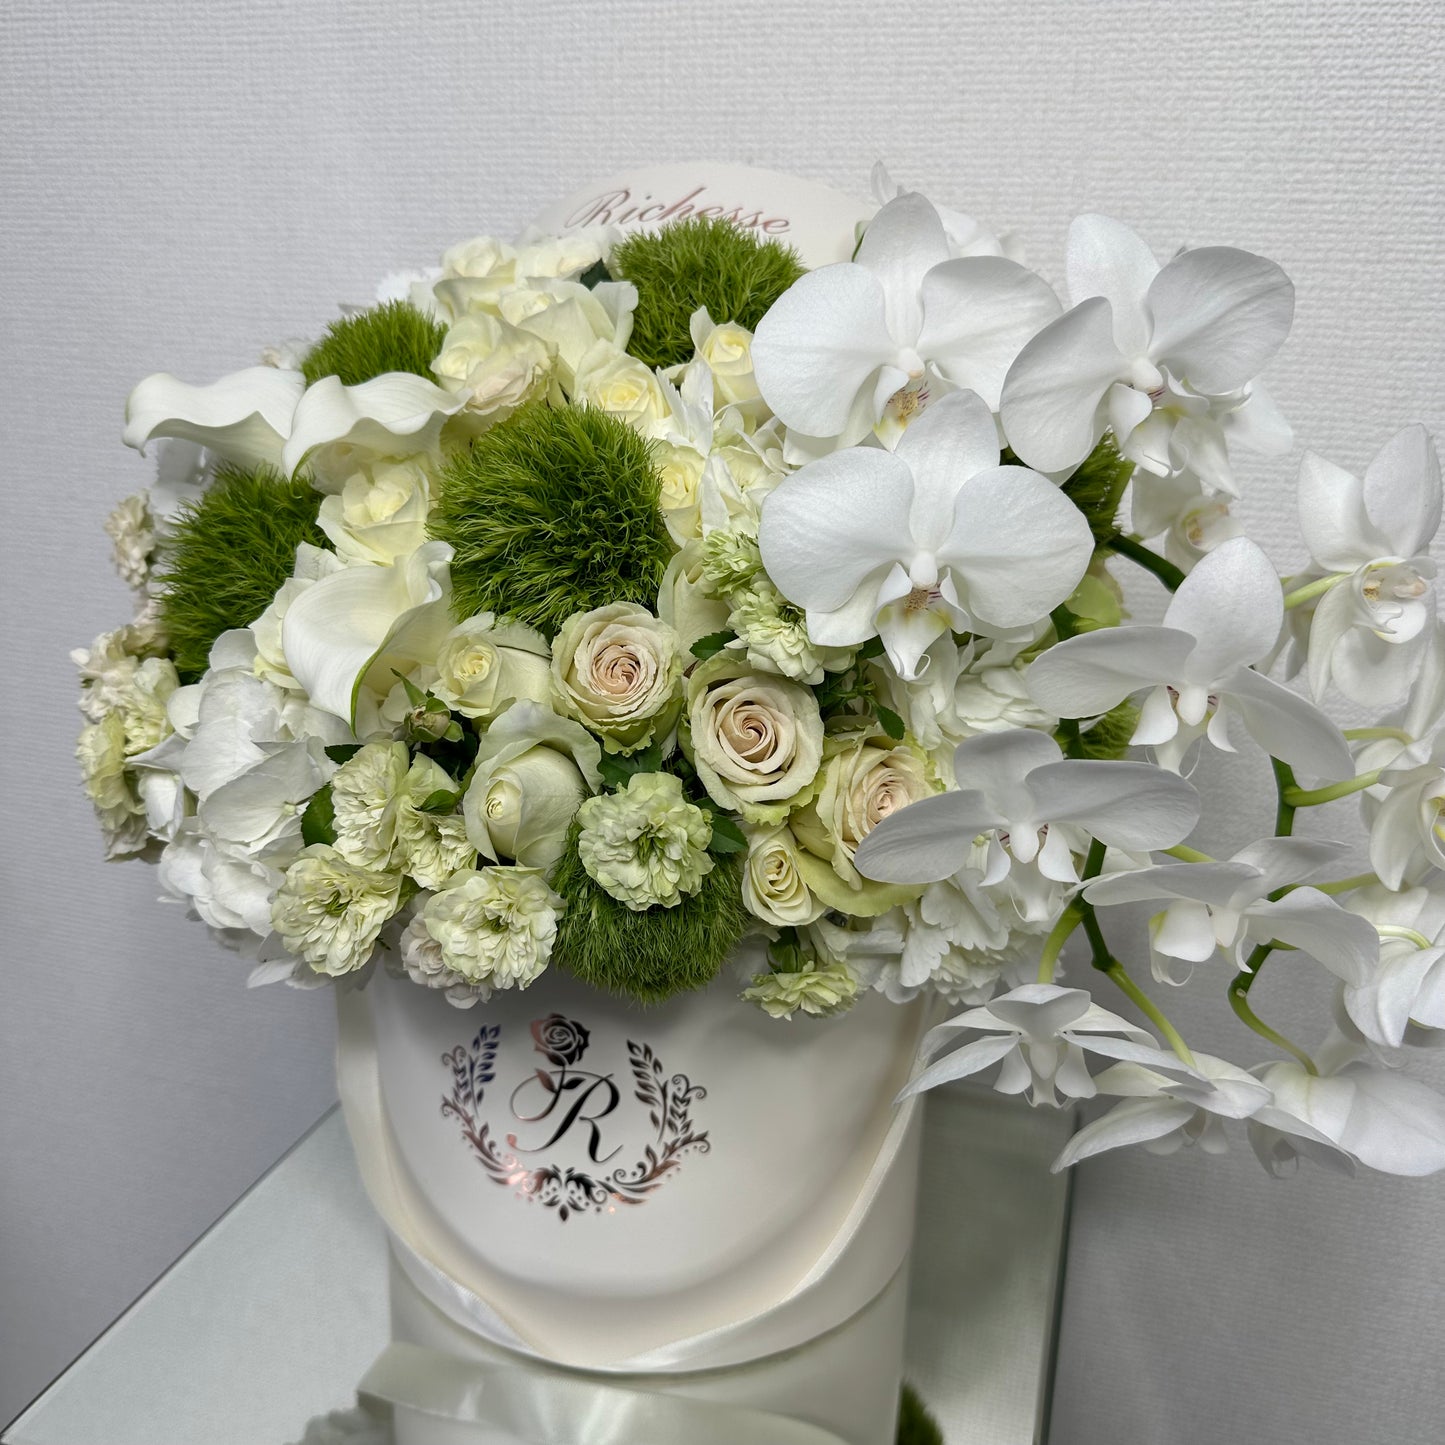 【Mサイズ】白バラをベースとしたテマリソウと胡蝶蘭のアレンジメント